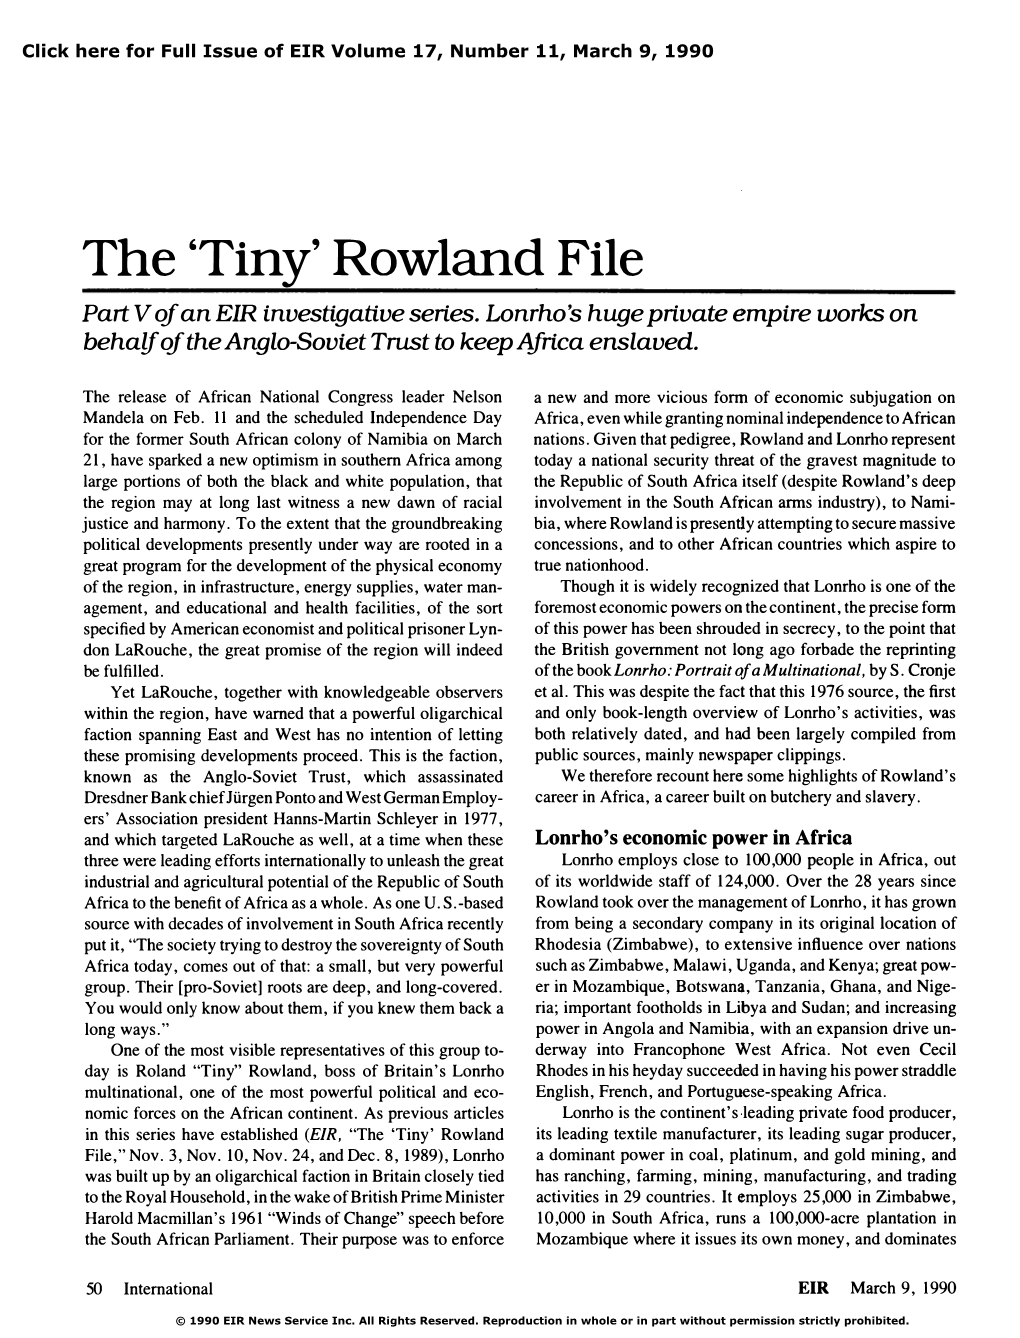 The 'Tiny' Rowland File, Part V